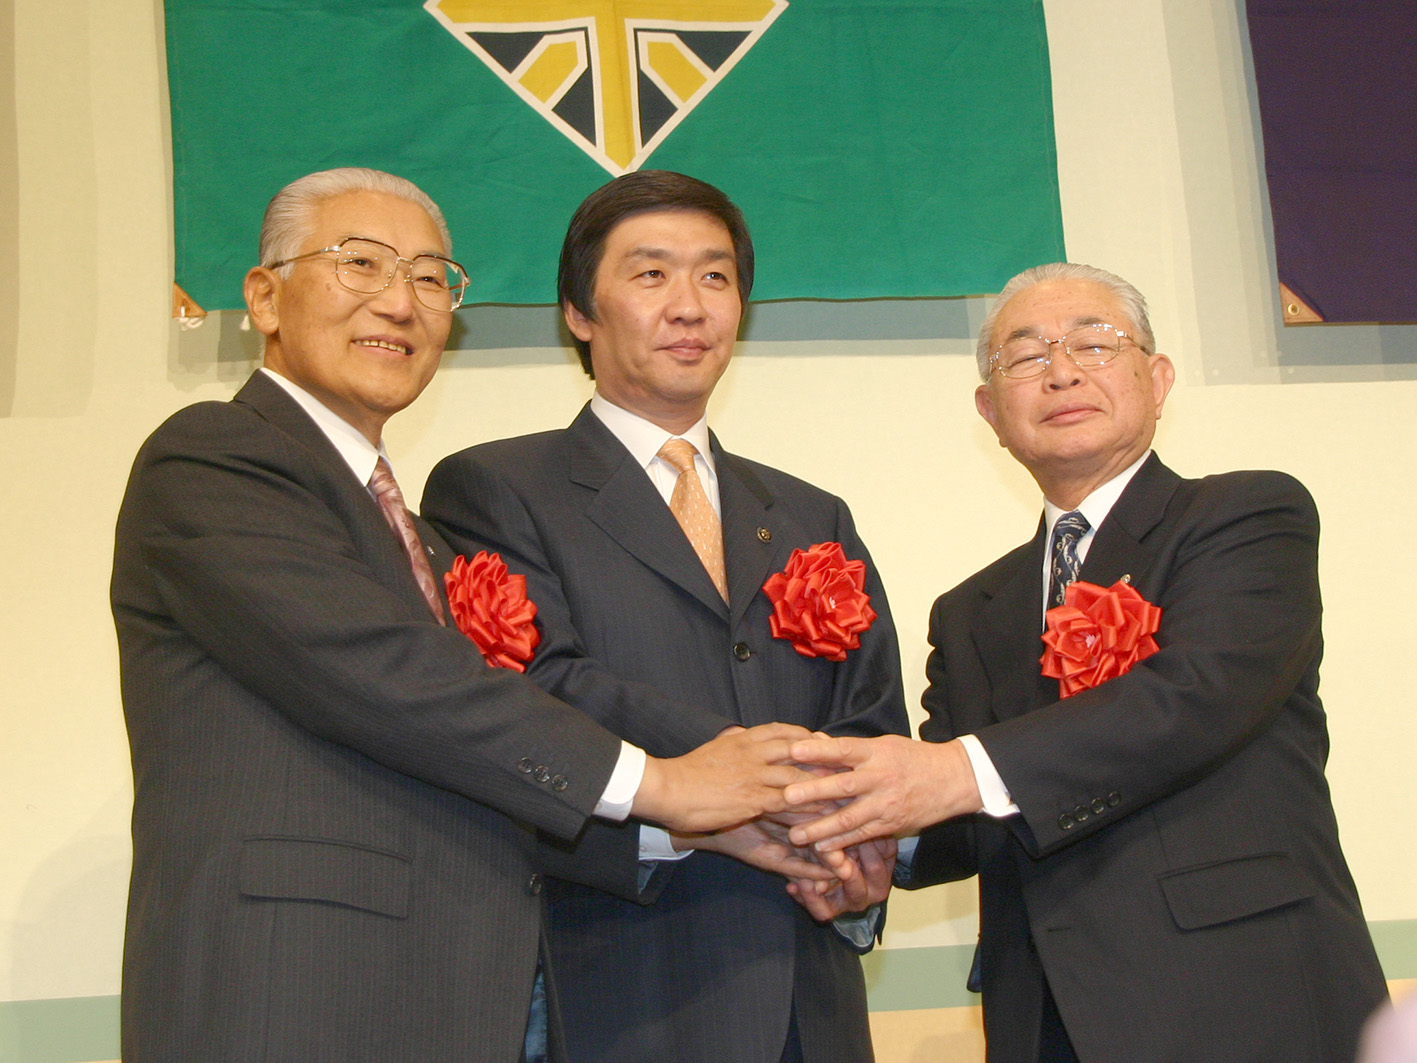 左胸に赤い花をつけた岩見沢市長、北村長、栗沢町長の3人が握手をしている合併協定調印式の写真